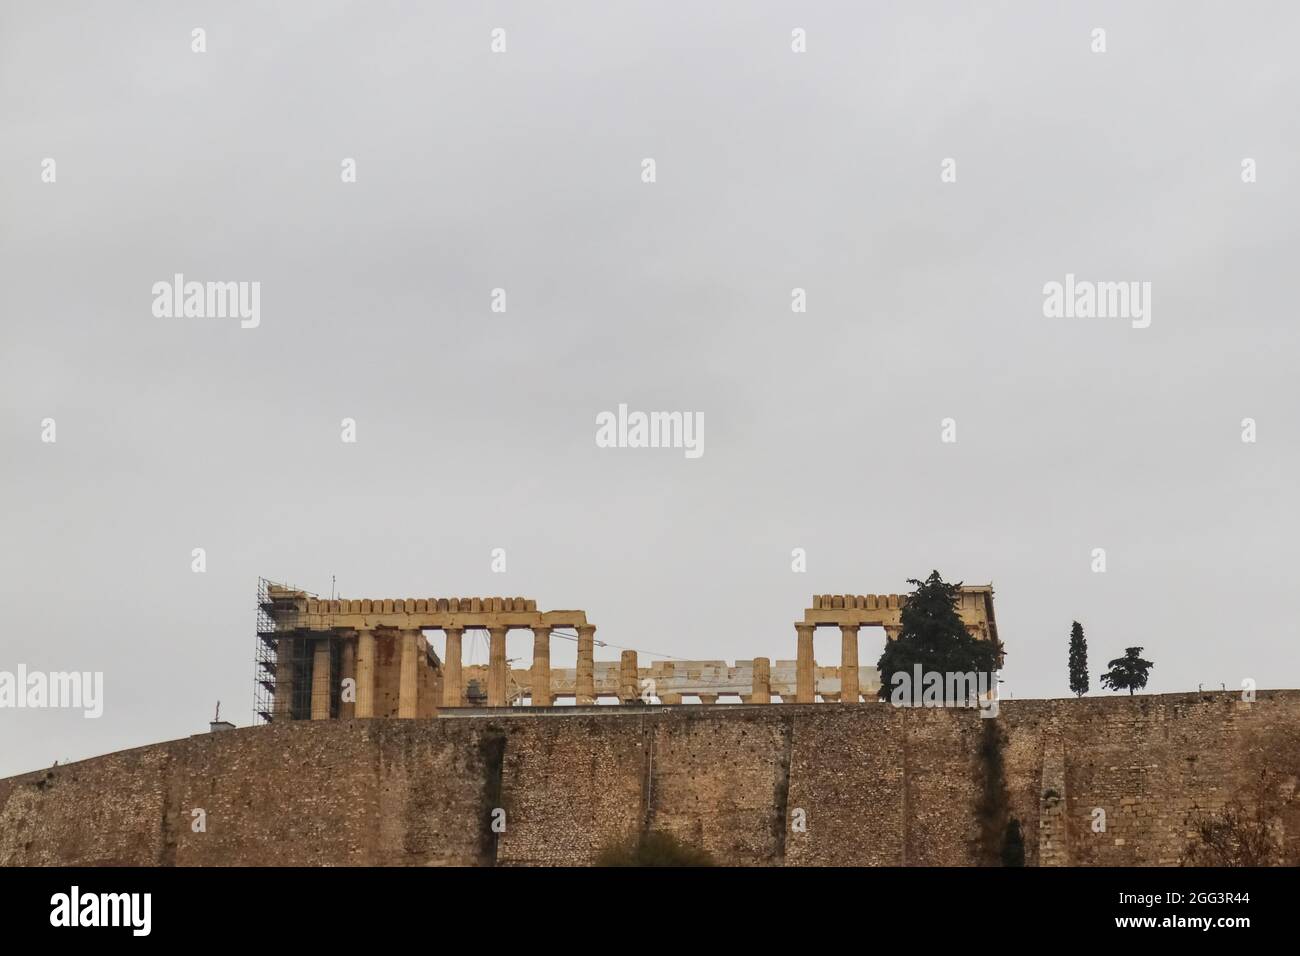 Vue de Partenon sur l'Acropole au-dessus du mur de soutènement, sur un ciel gris, depuis le musée de l'Acropole - salle à copier Banque D'Images